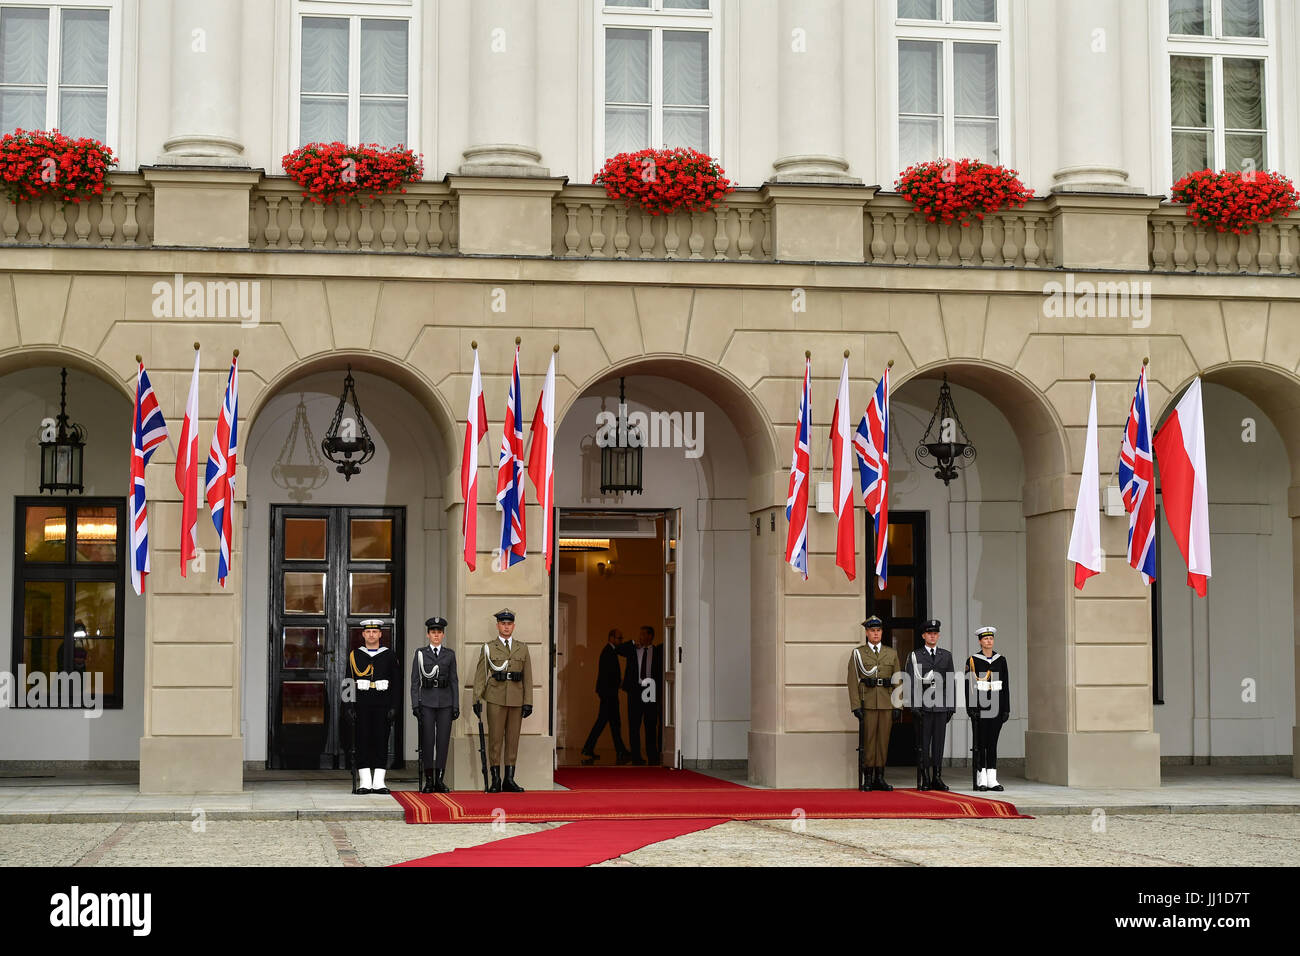 La cour intérieure du palais présidentiel à Varsovie, en Pologne avant la le duc et la duchesse de Cambridge, rencontrer le Président Andrzej Duda et son épouse, Agata, le premier jour de leurs cinq jours tour de Pologne et l'Allemagne. Banque D'Images